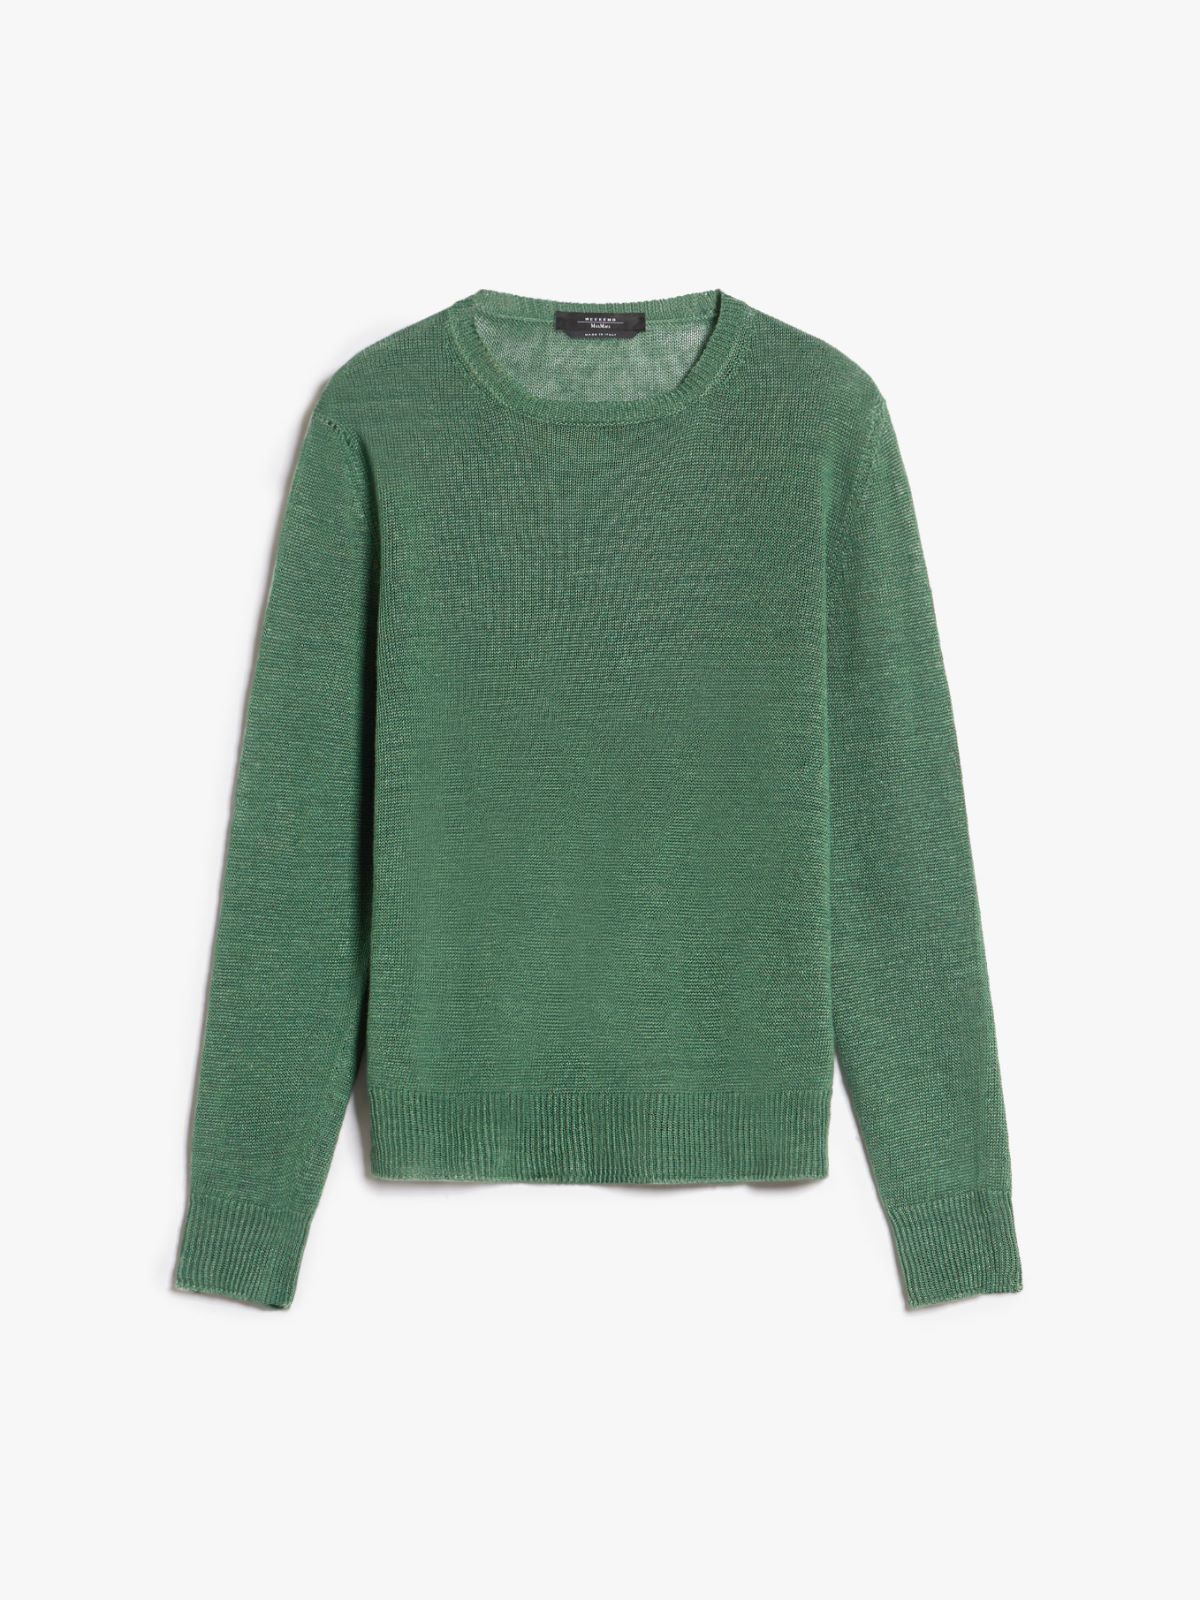 Linen yarn sweater, green | Weekend Max Mara